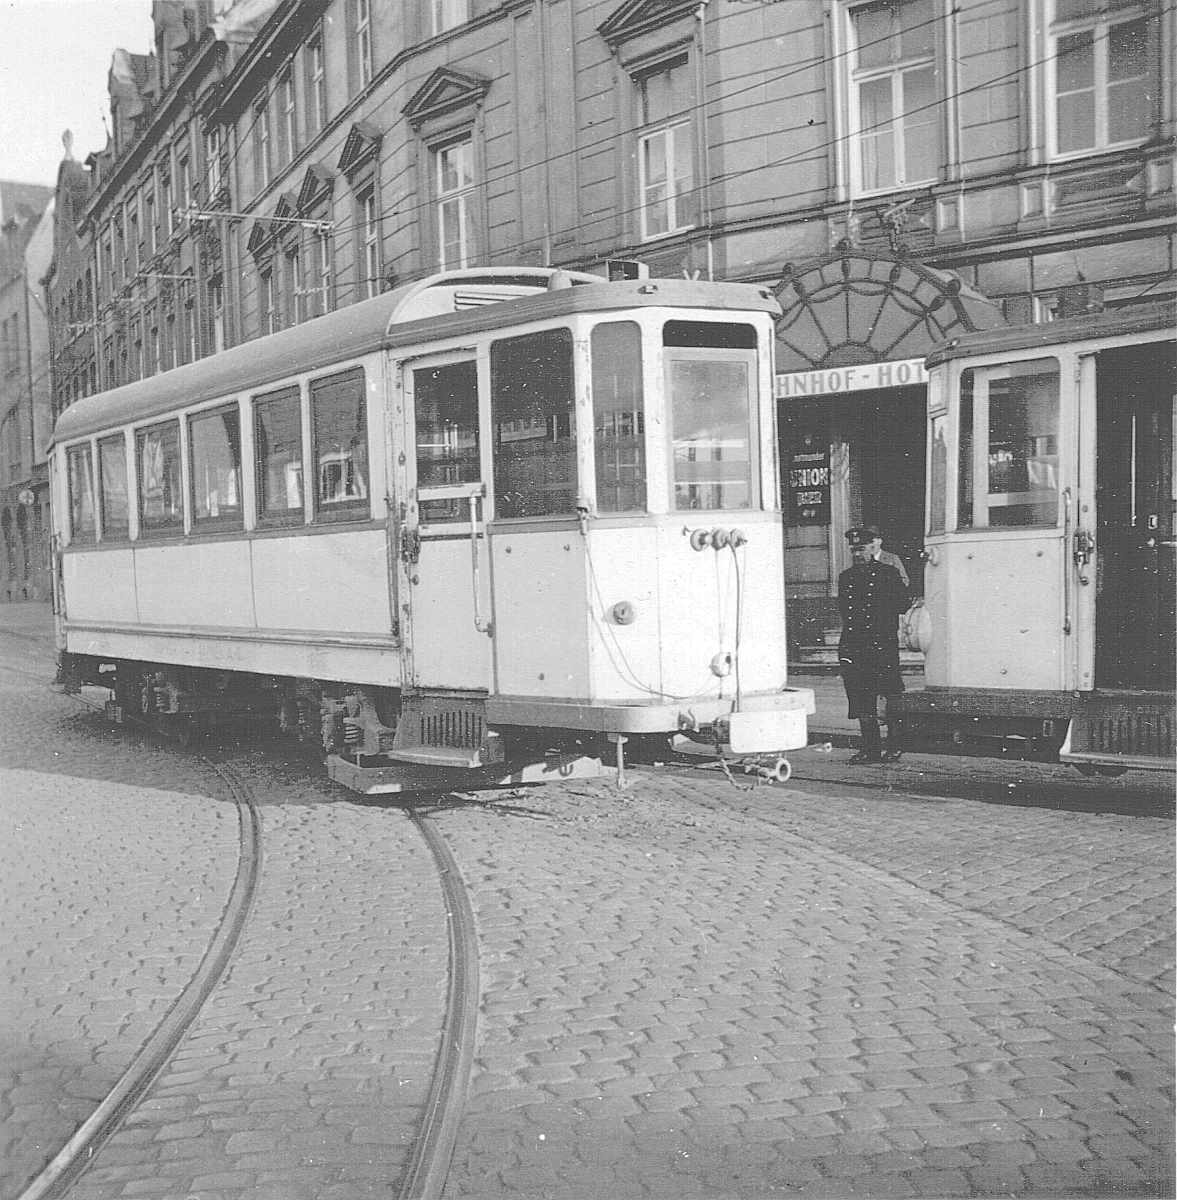 WuppertalerStrassenbahn/5_2_Tram_Wuppertal_aufgebockt_vor_Bahnhof-Hotel_mit_Scheinwerfer-Verdunkelung_um_1940